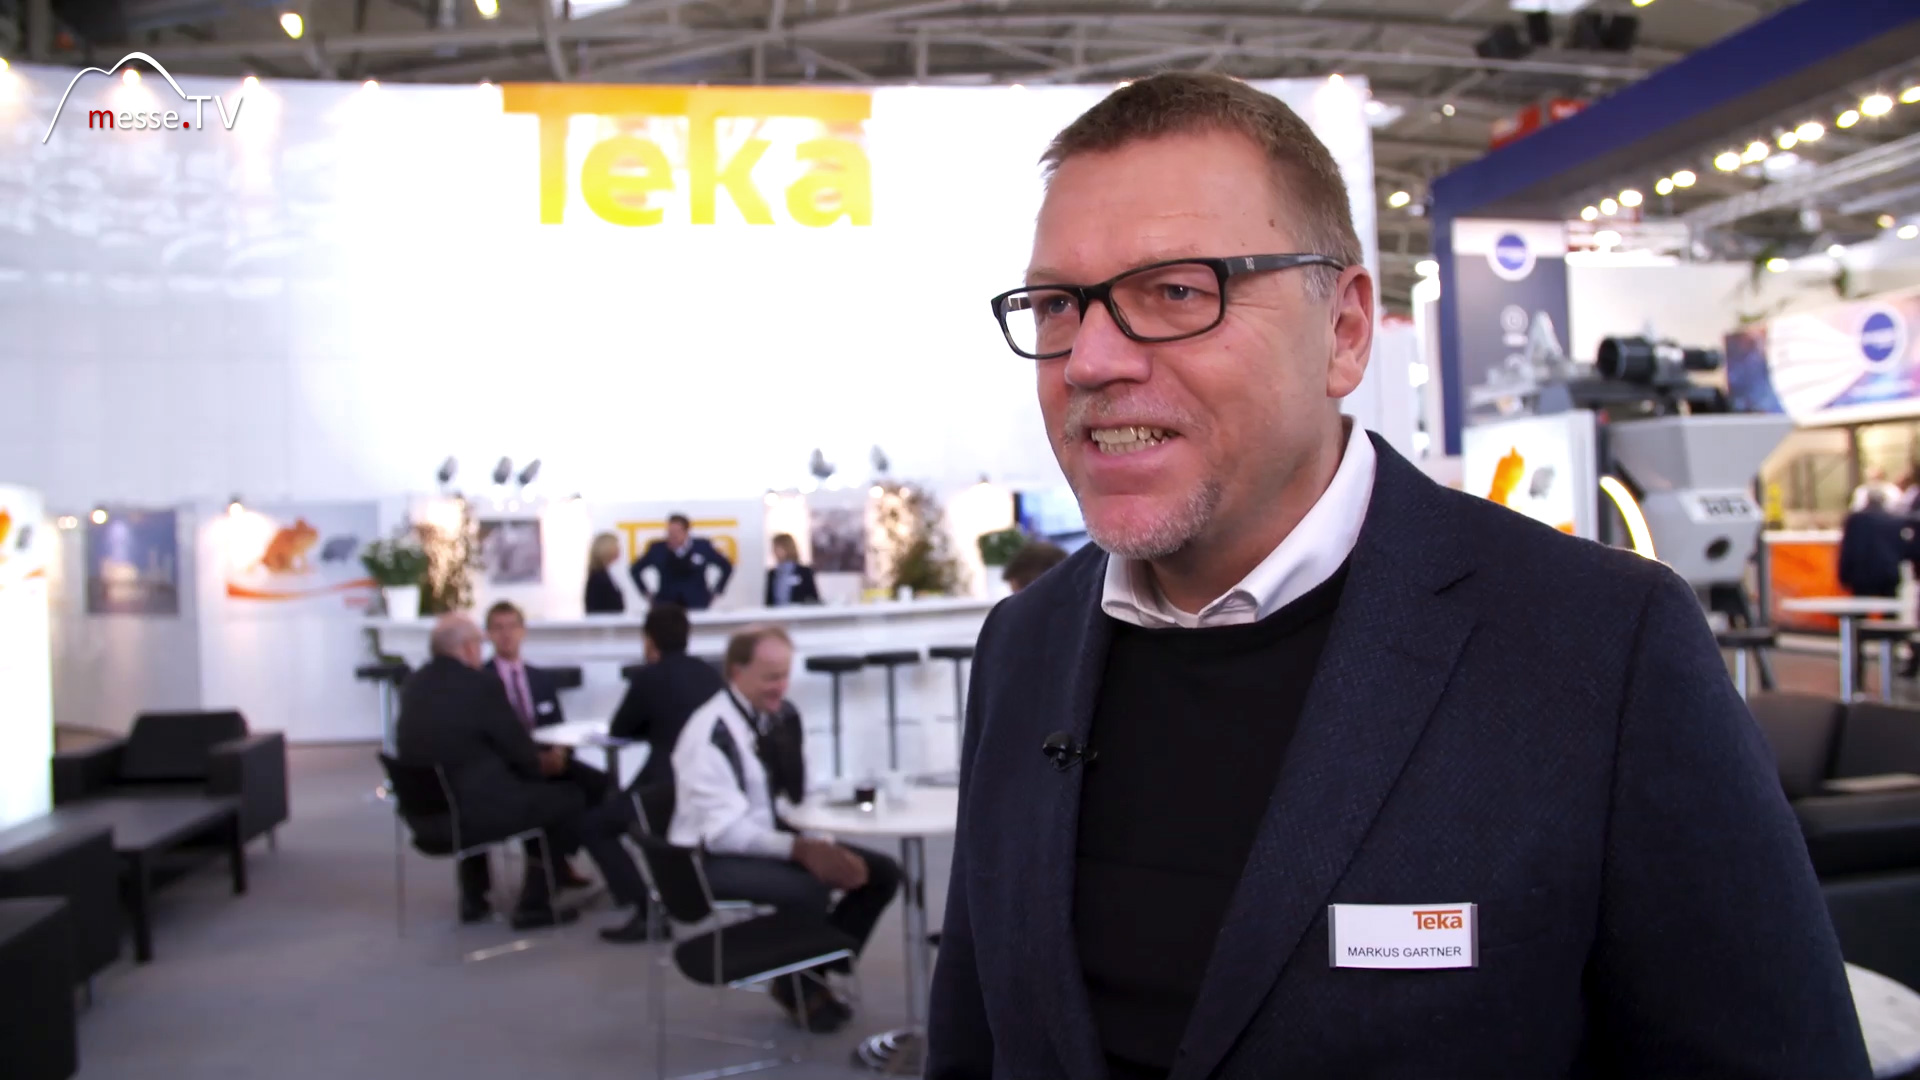 Interview Markus Gartner Teka mechanical engineering bauma 2019 Munich